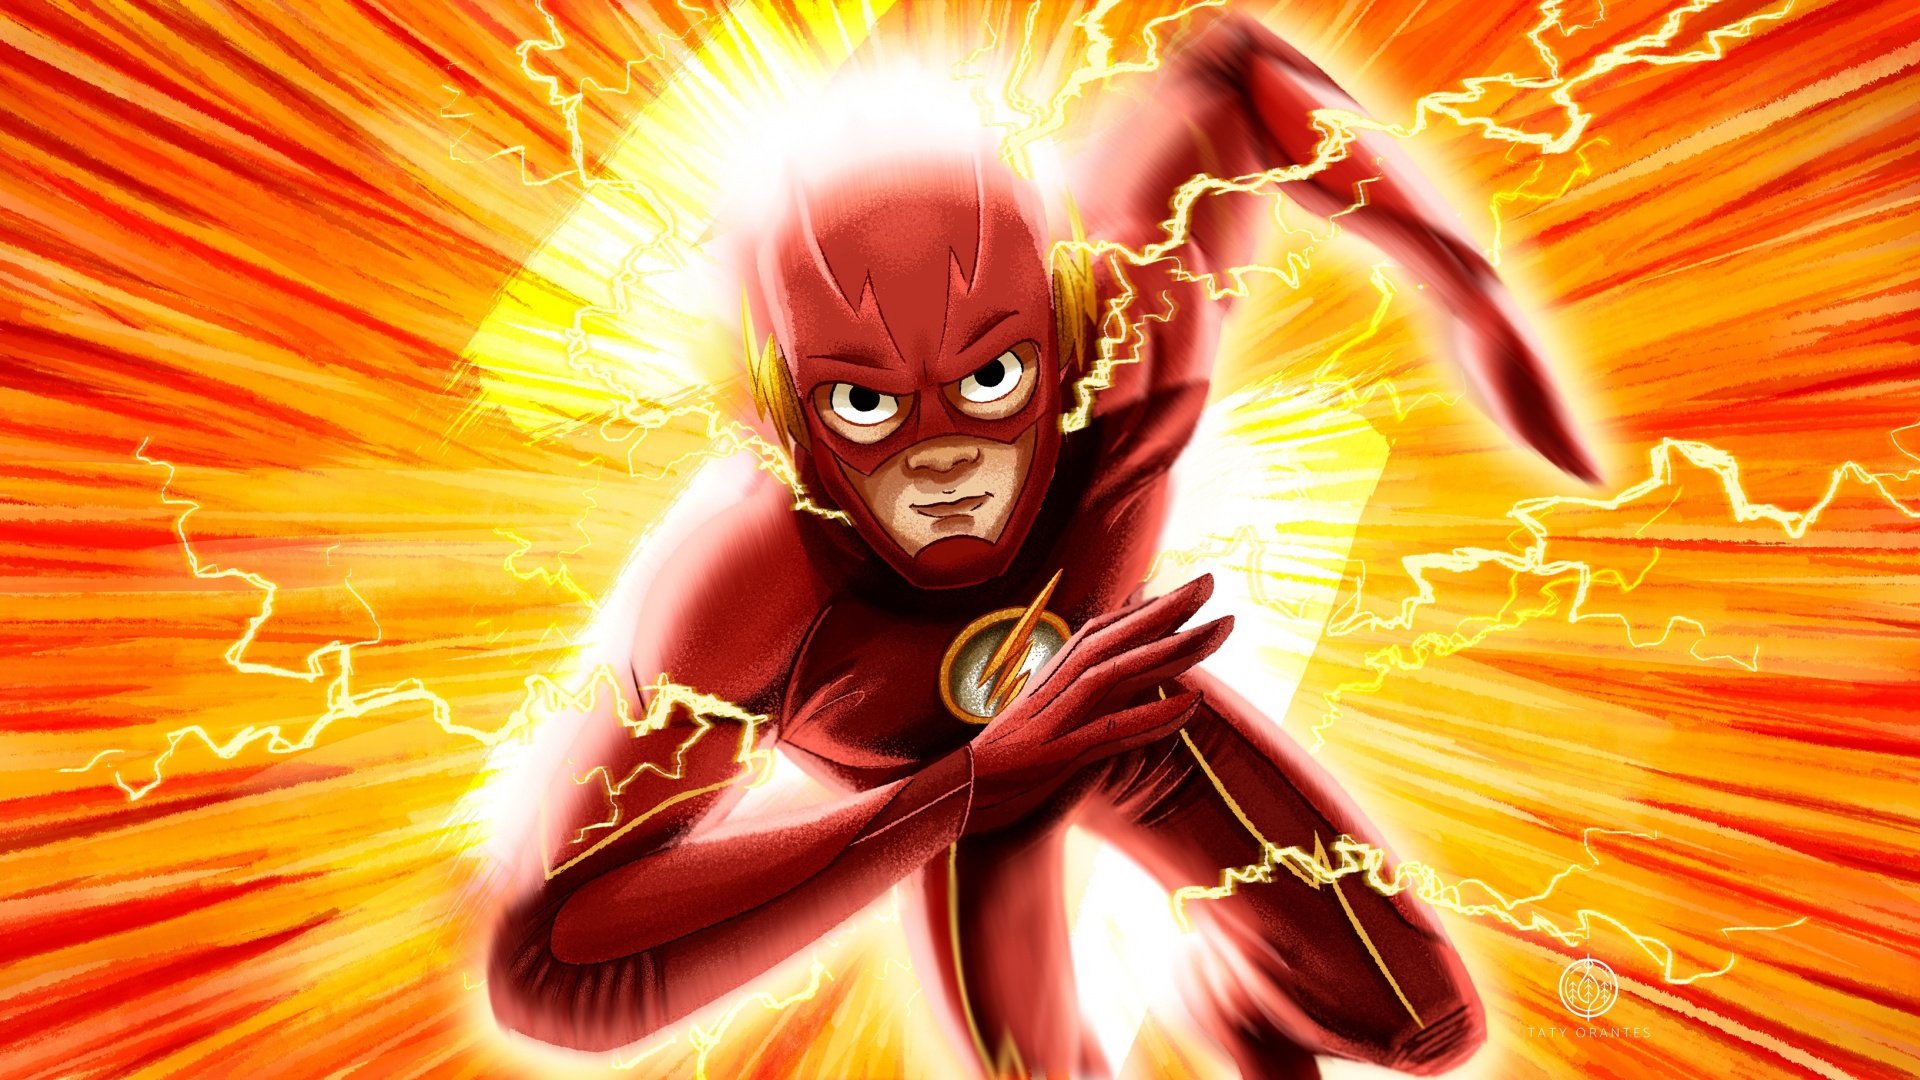 Flash, Run Flash Run, Fan Art, Dc Comics, Wallpaper - Flash Running Fan Art - HD Wallpaper 